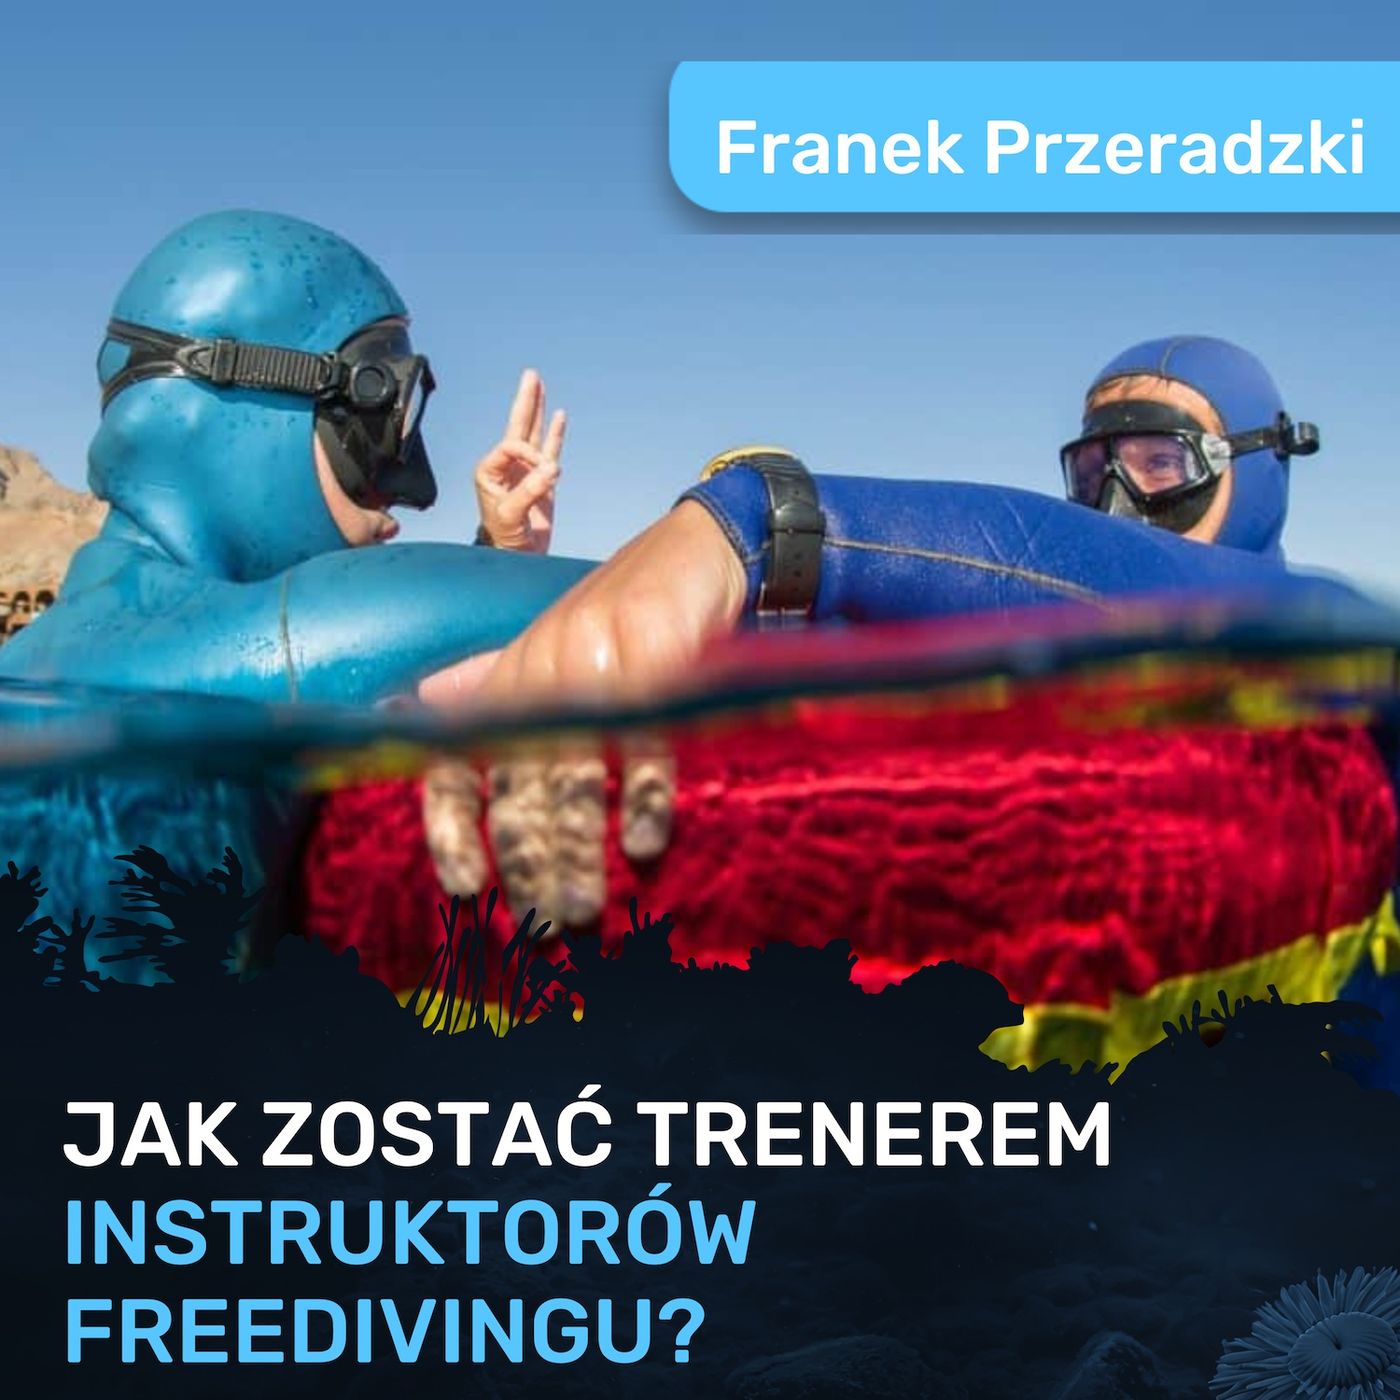 Jak zostałem trenerem instruktorów Freedivingu? - Franek Przeradzki